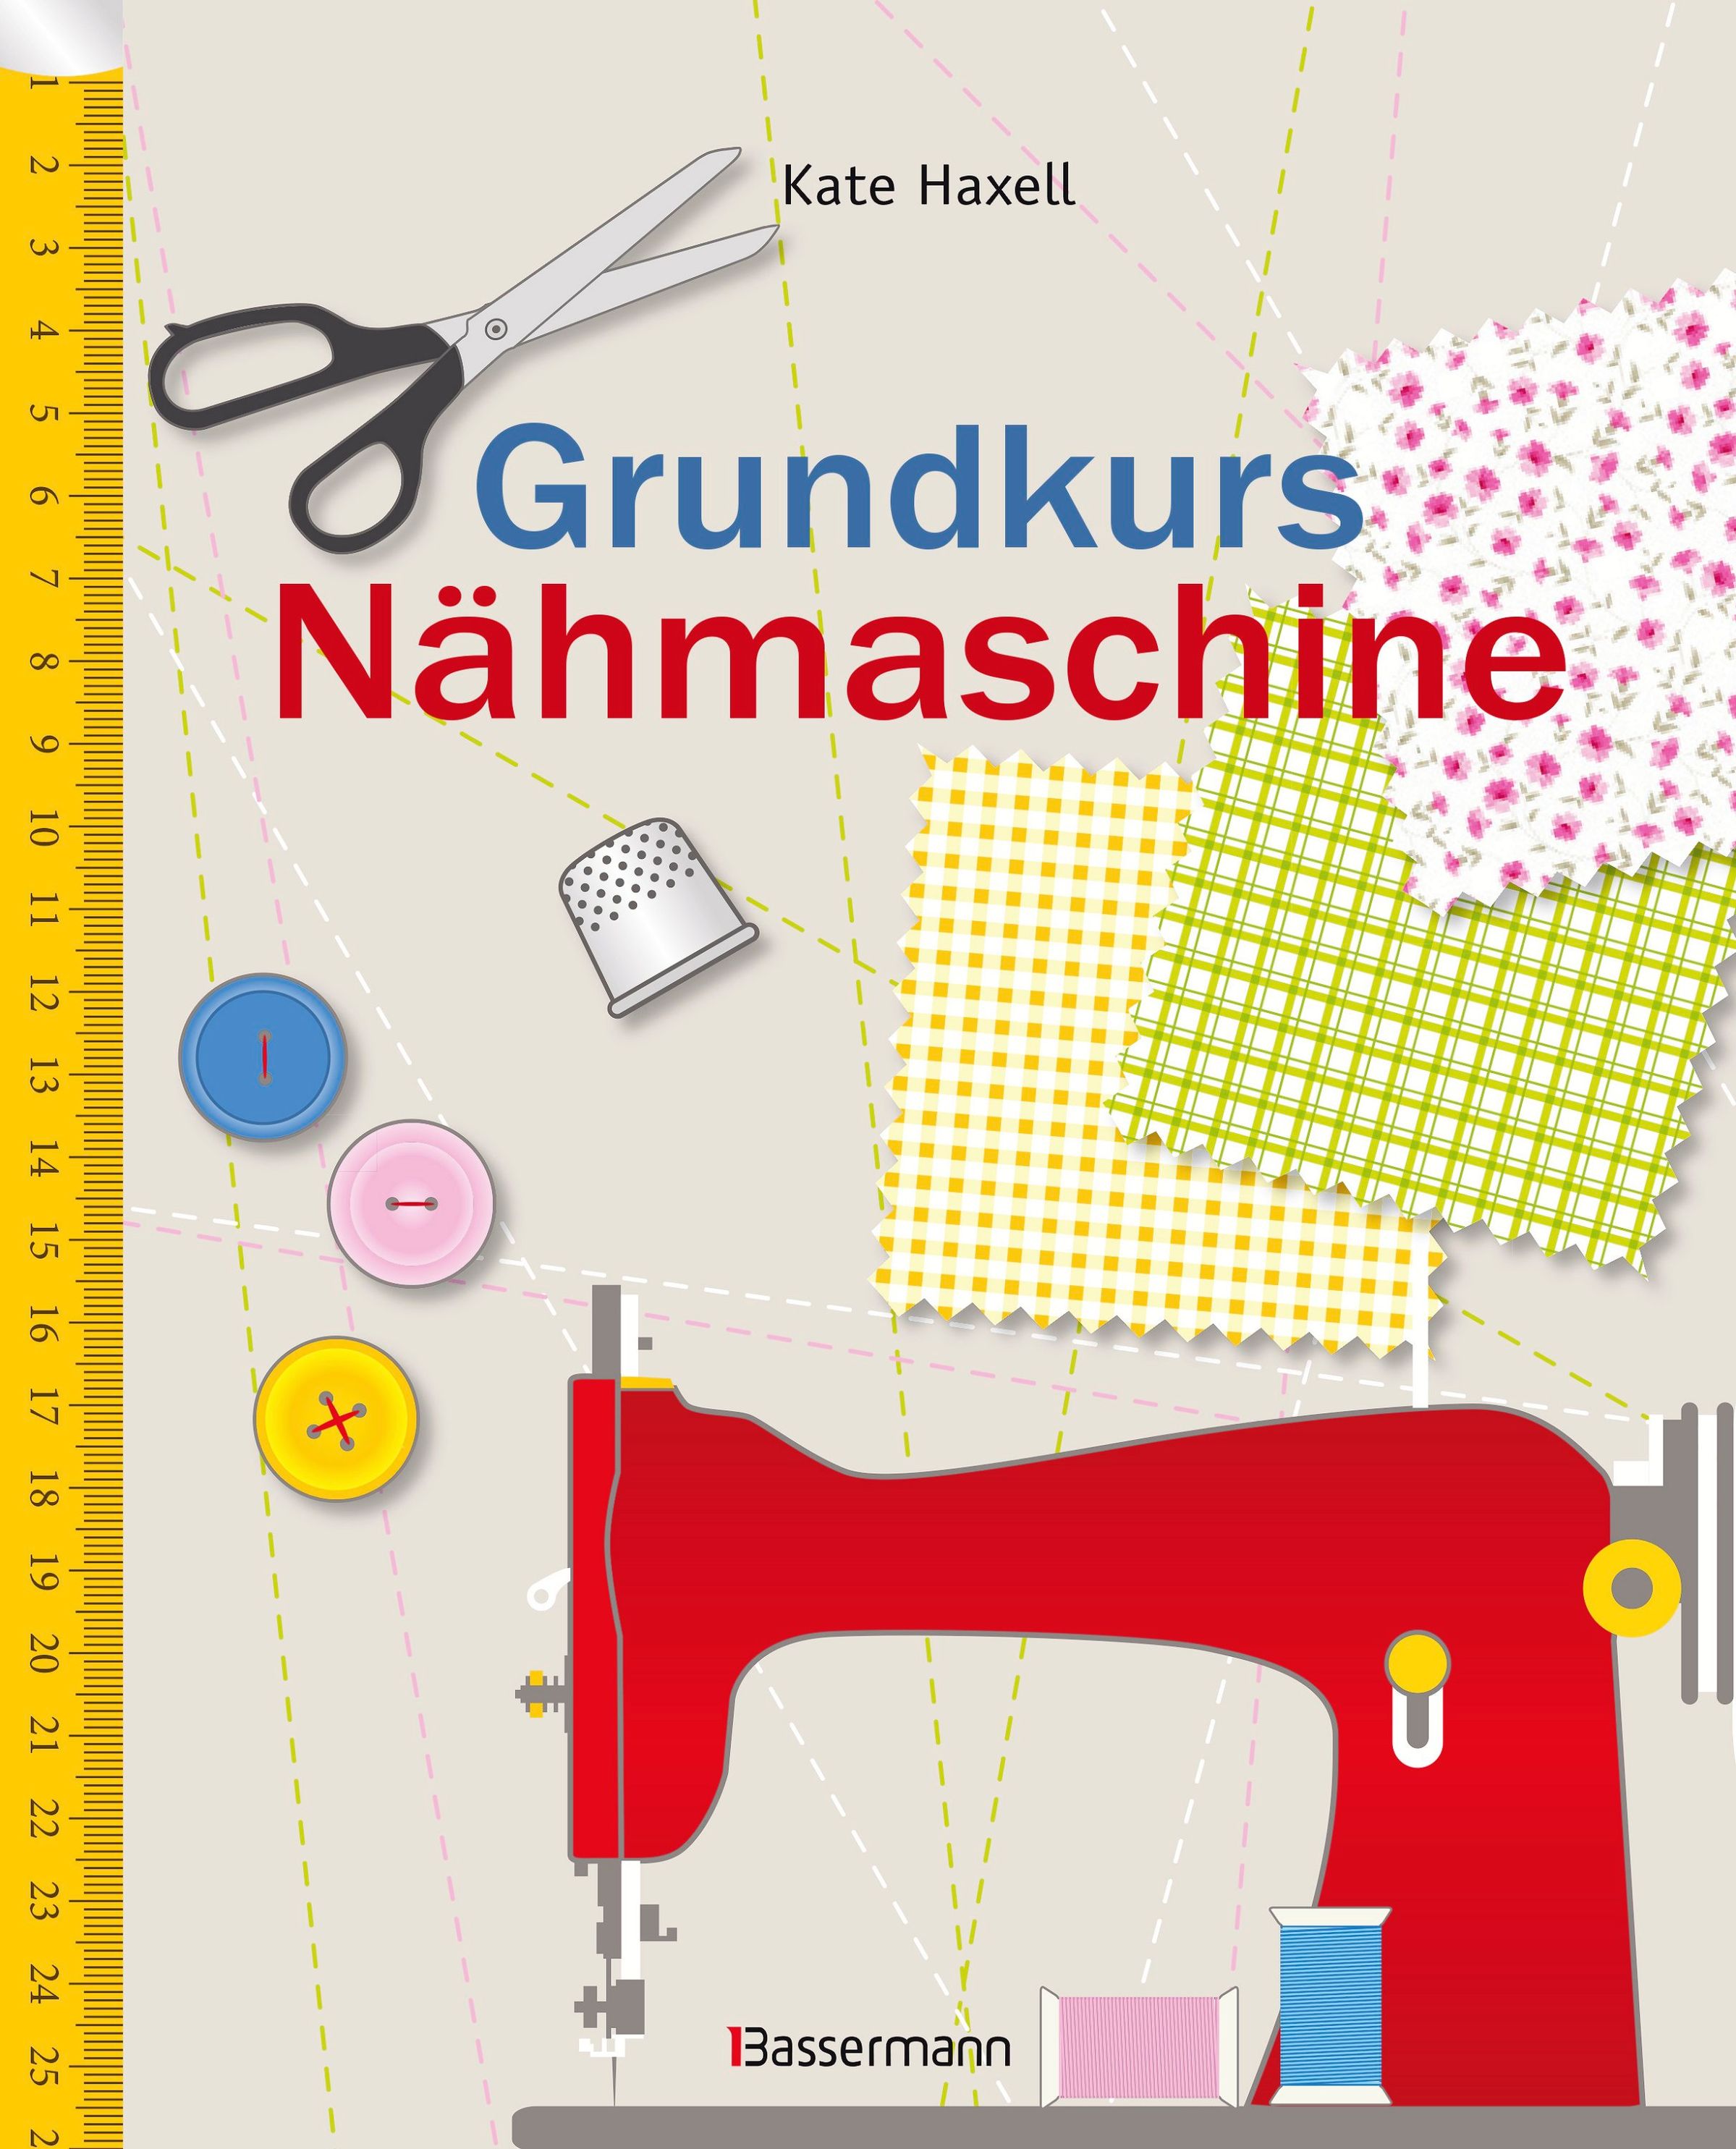 Grundkurs Nähmaschine Buch von Kate Haxell versandkostenfrei - Weltbild.de